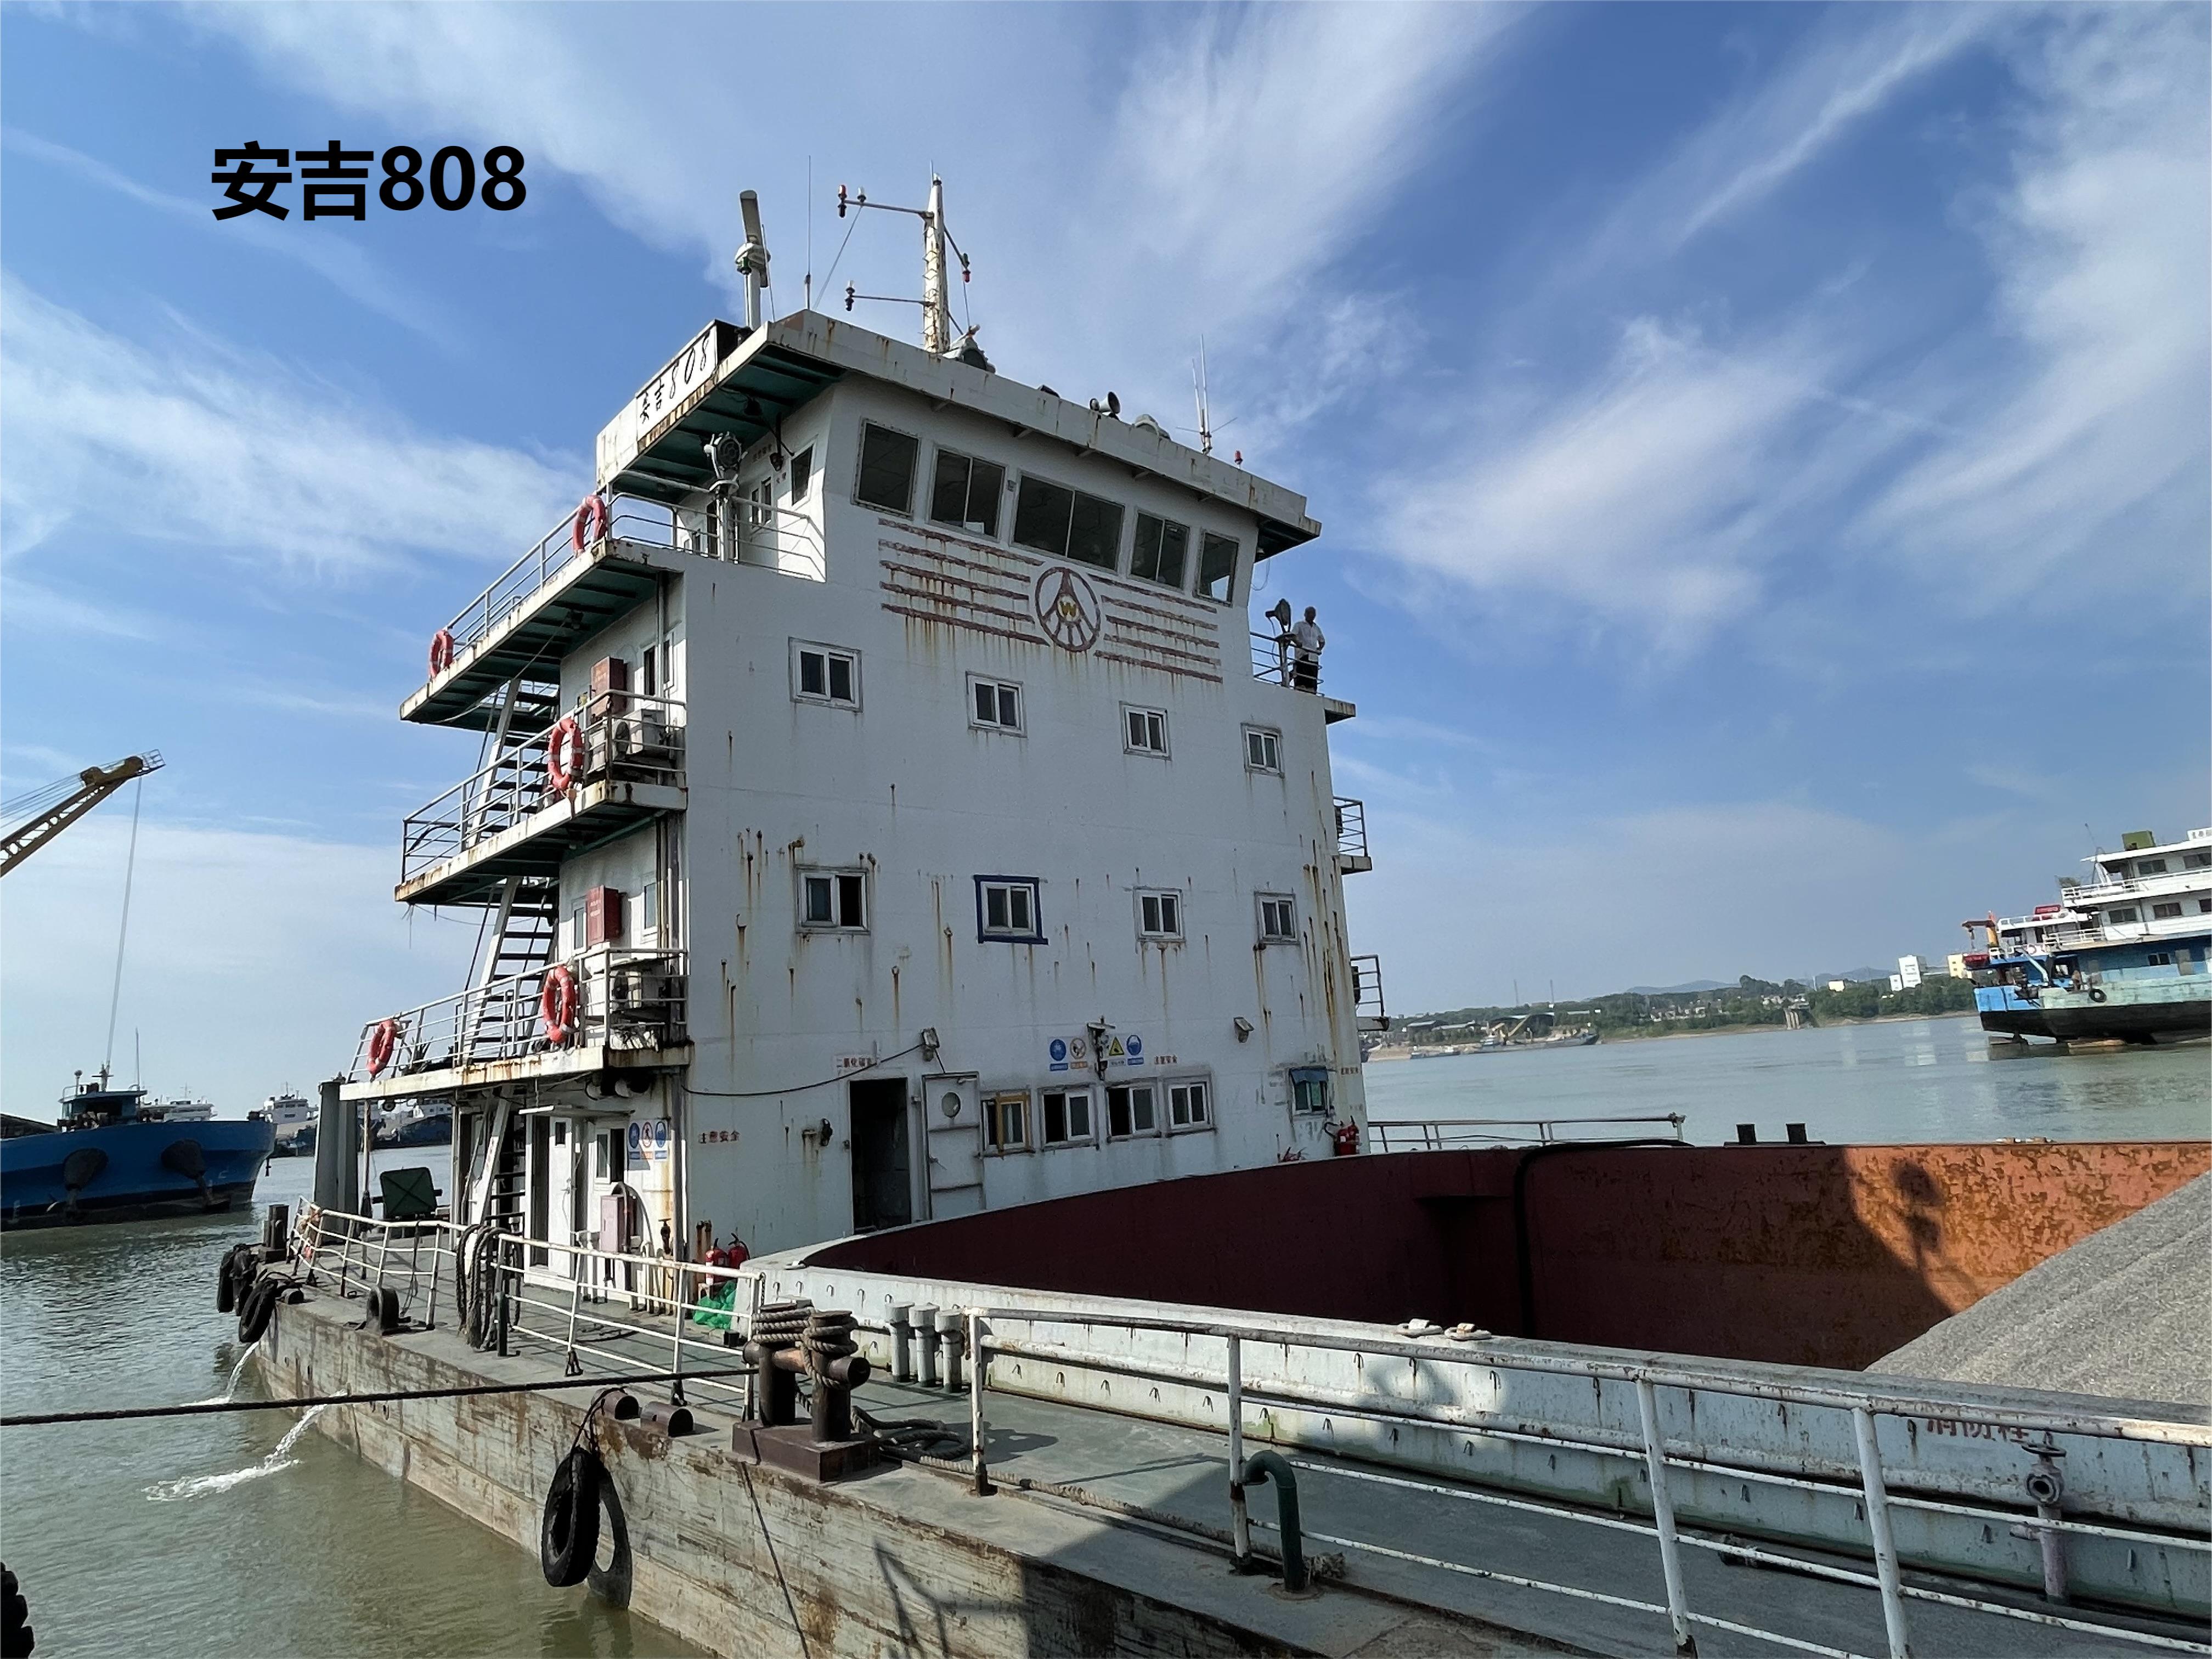 物流公司部分资产“安吉808”集装箱船及附属设施设备出售招标